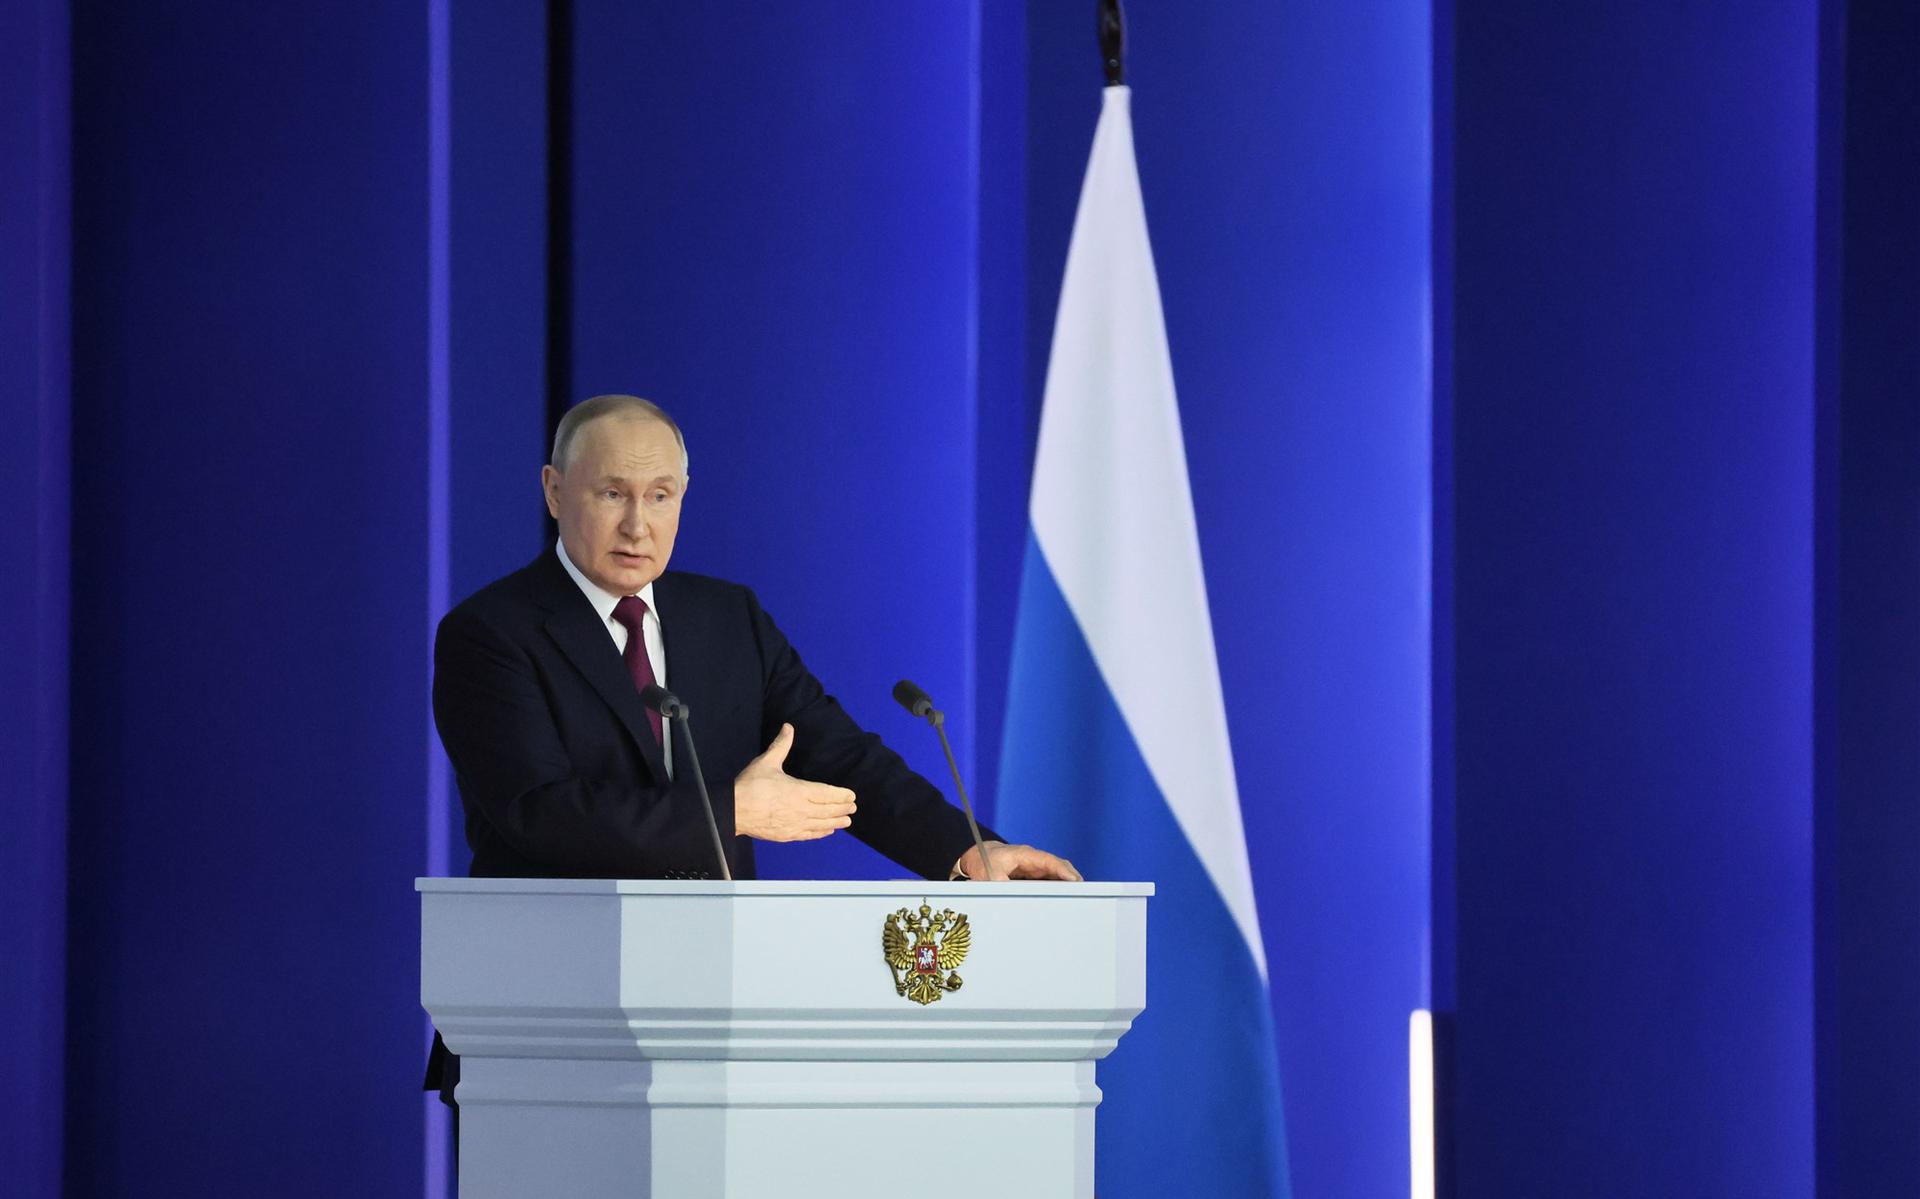 Vladimir Poetin tijdens zijn toespraak.